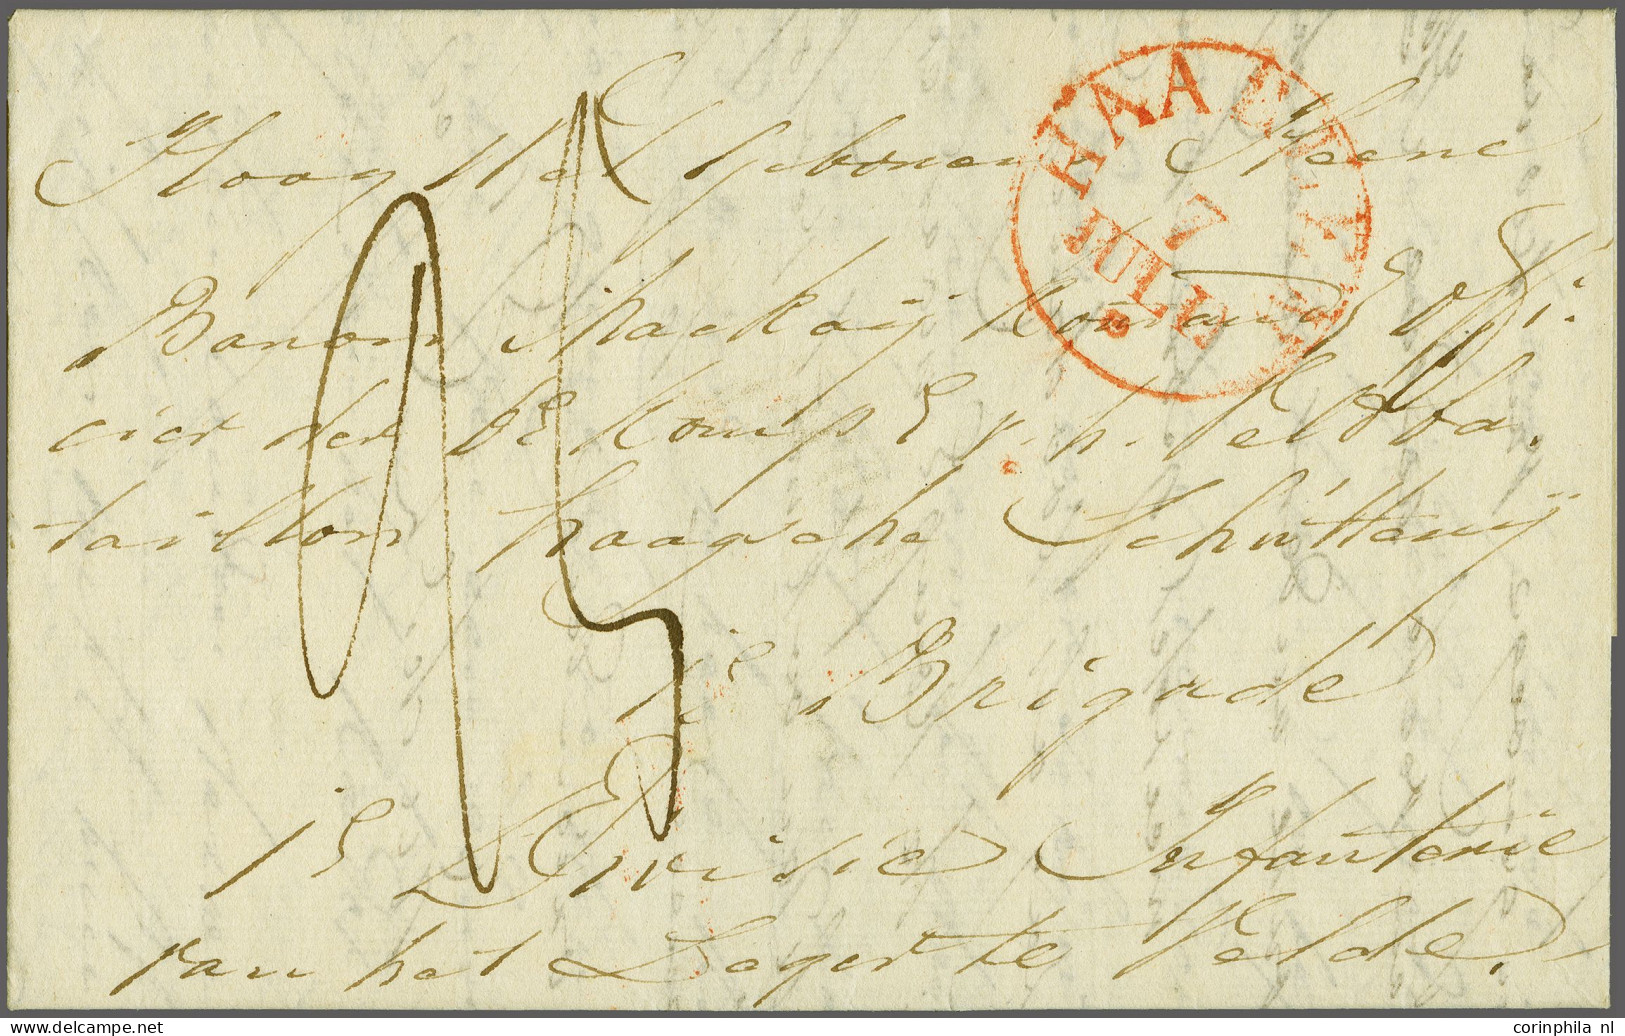 Cover 1833, Complete Frisse Brief Haarlem 7-7-1833 Aan Baron Mackay Kommand[erend] Officier Der 6e Komp V H Veldbataillo - ...-1852 Prephilately